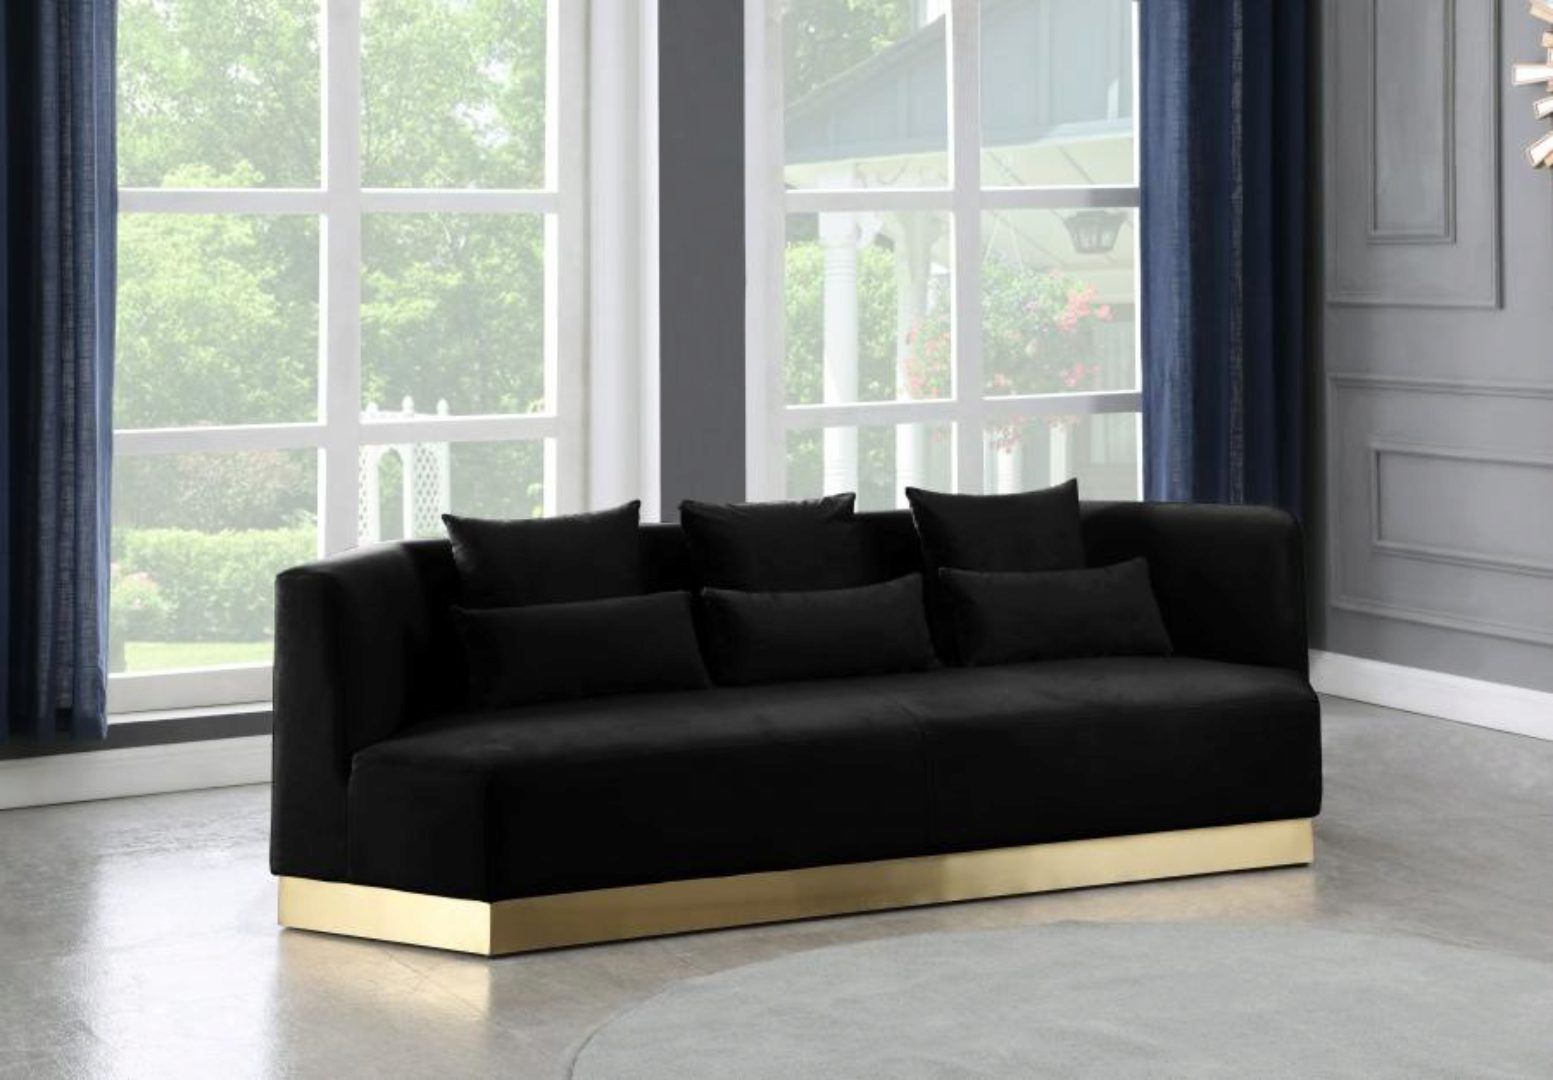 Black Velvet Sofa Curved Design Contemporary Meridian In Strummer Velvet Sectional Sofas (View 7 of 15)